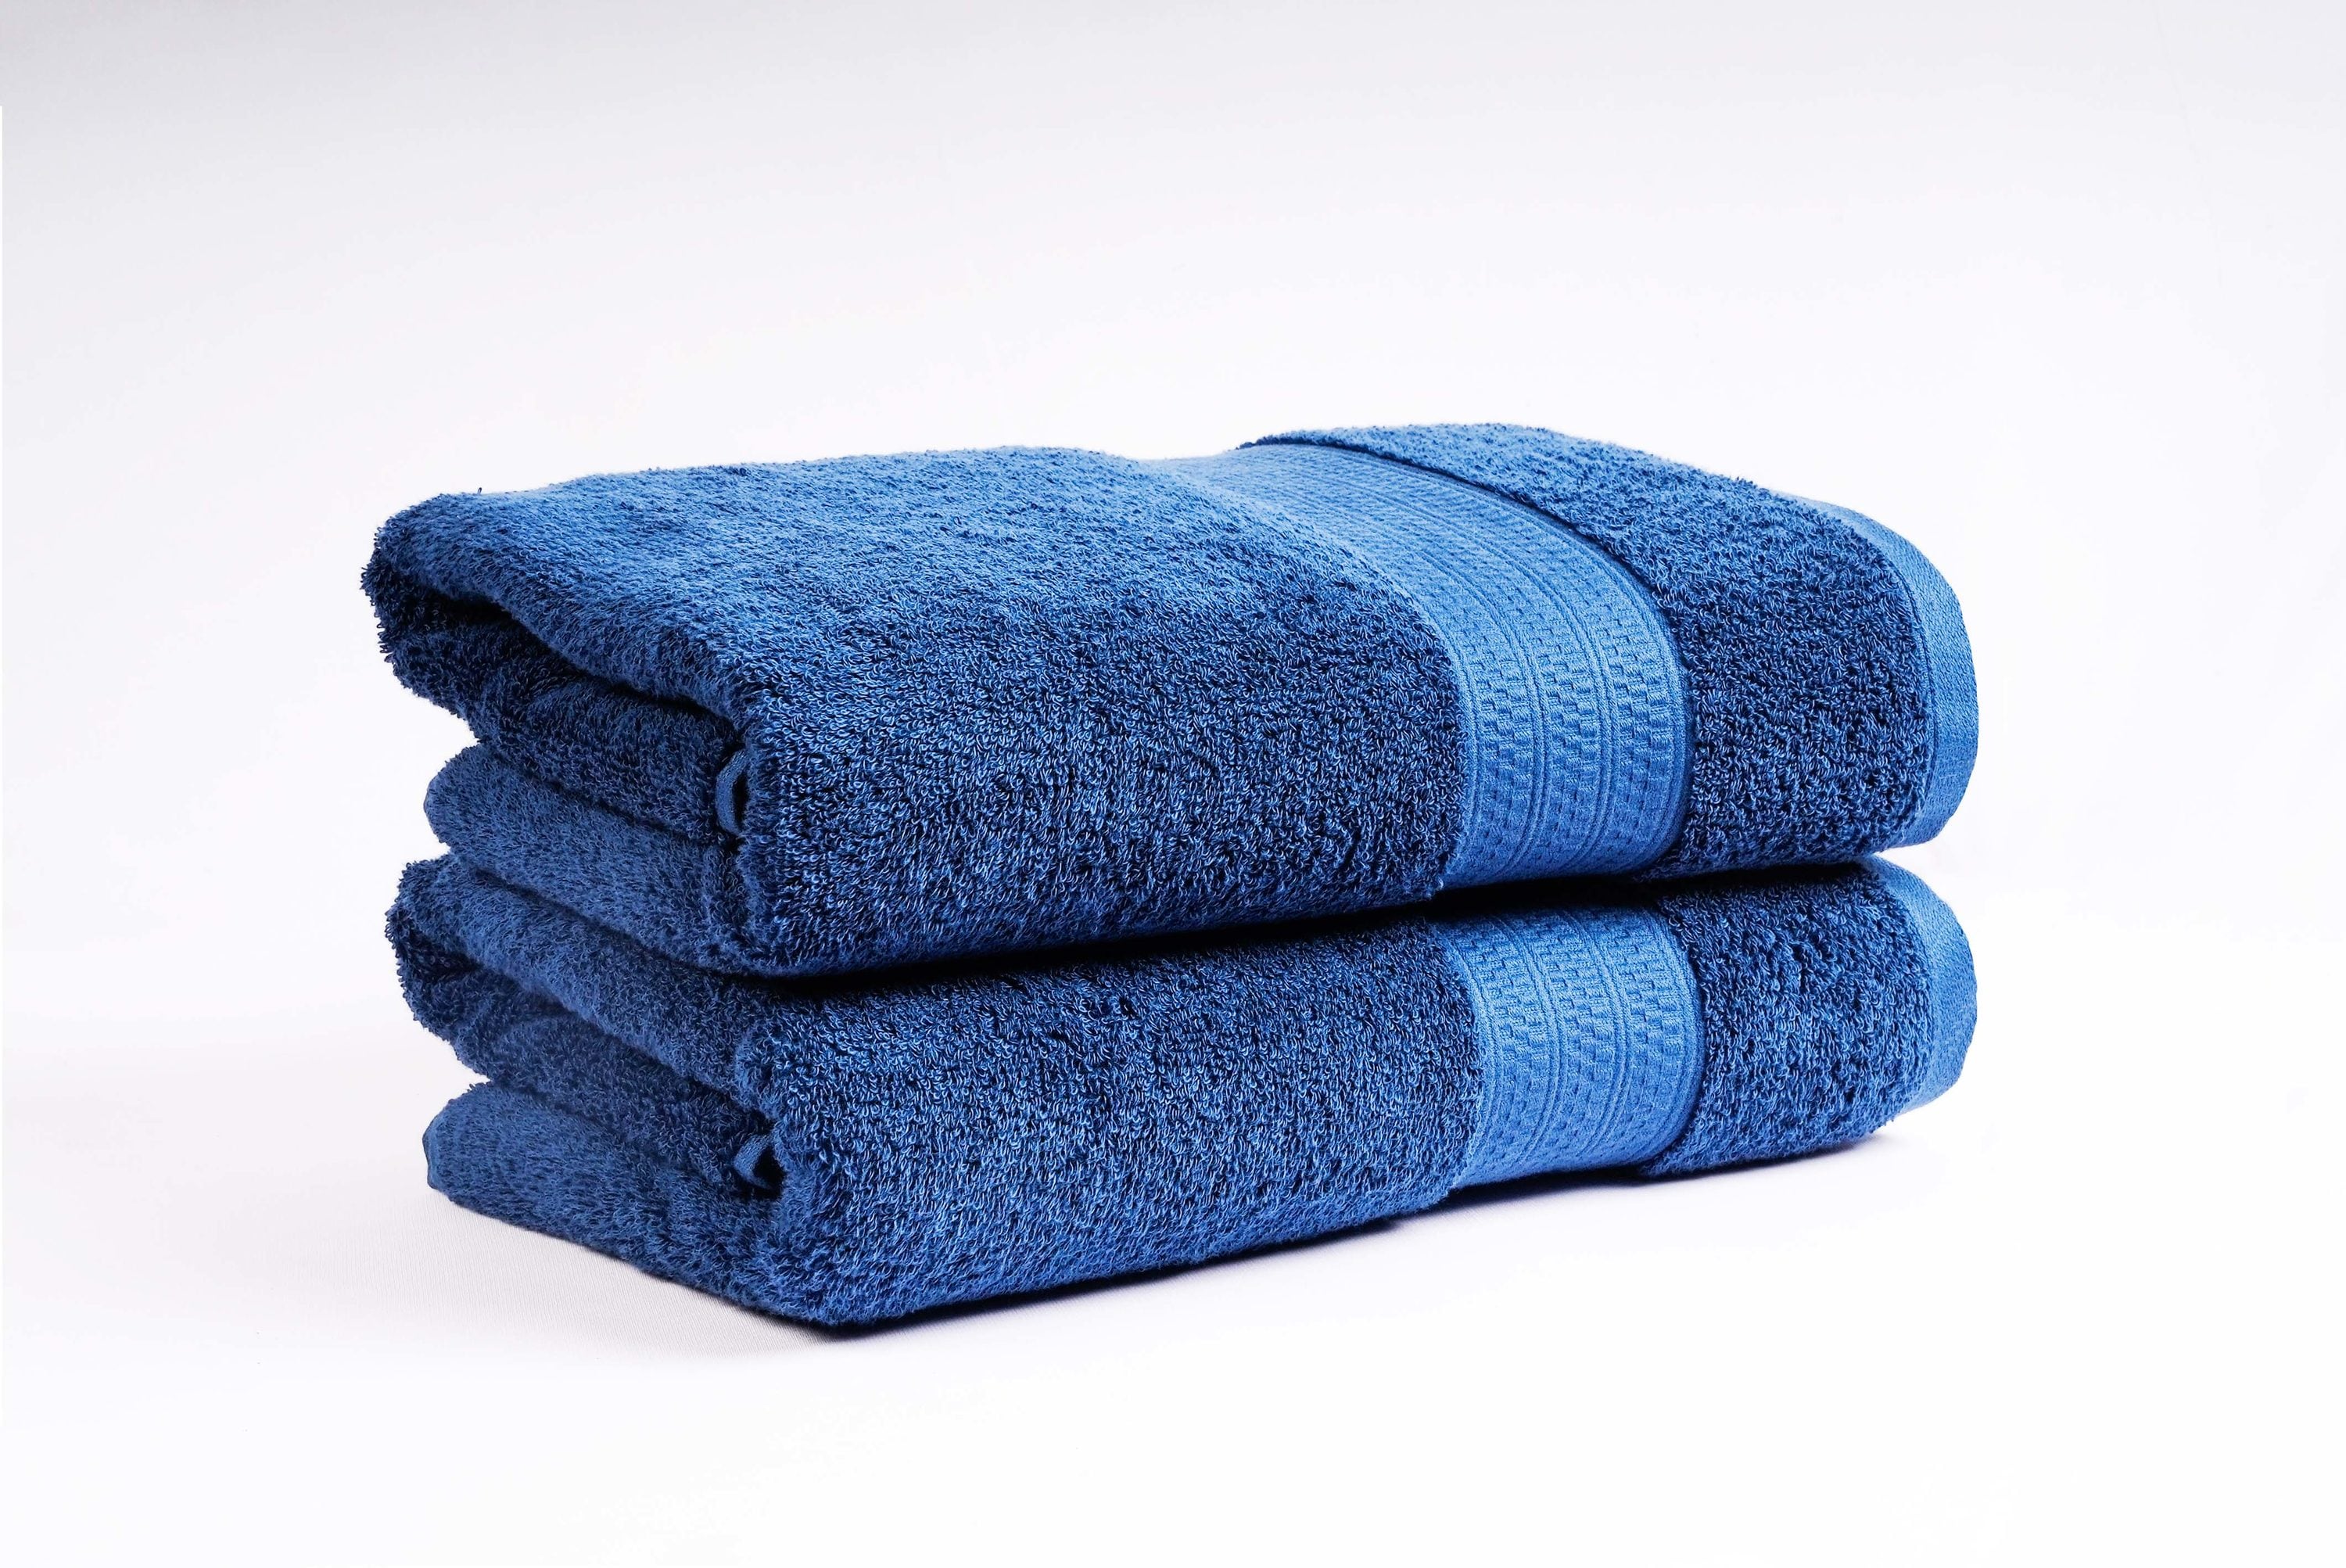 Openook Classics Bath Towel - Blue